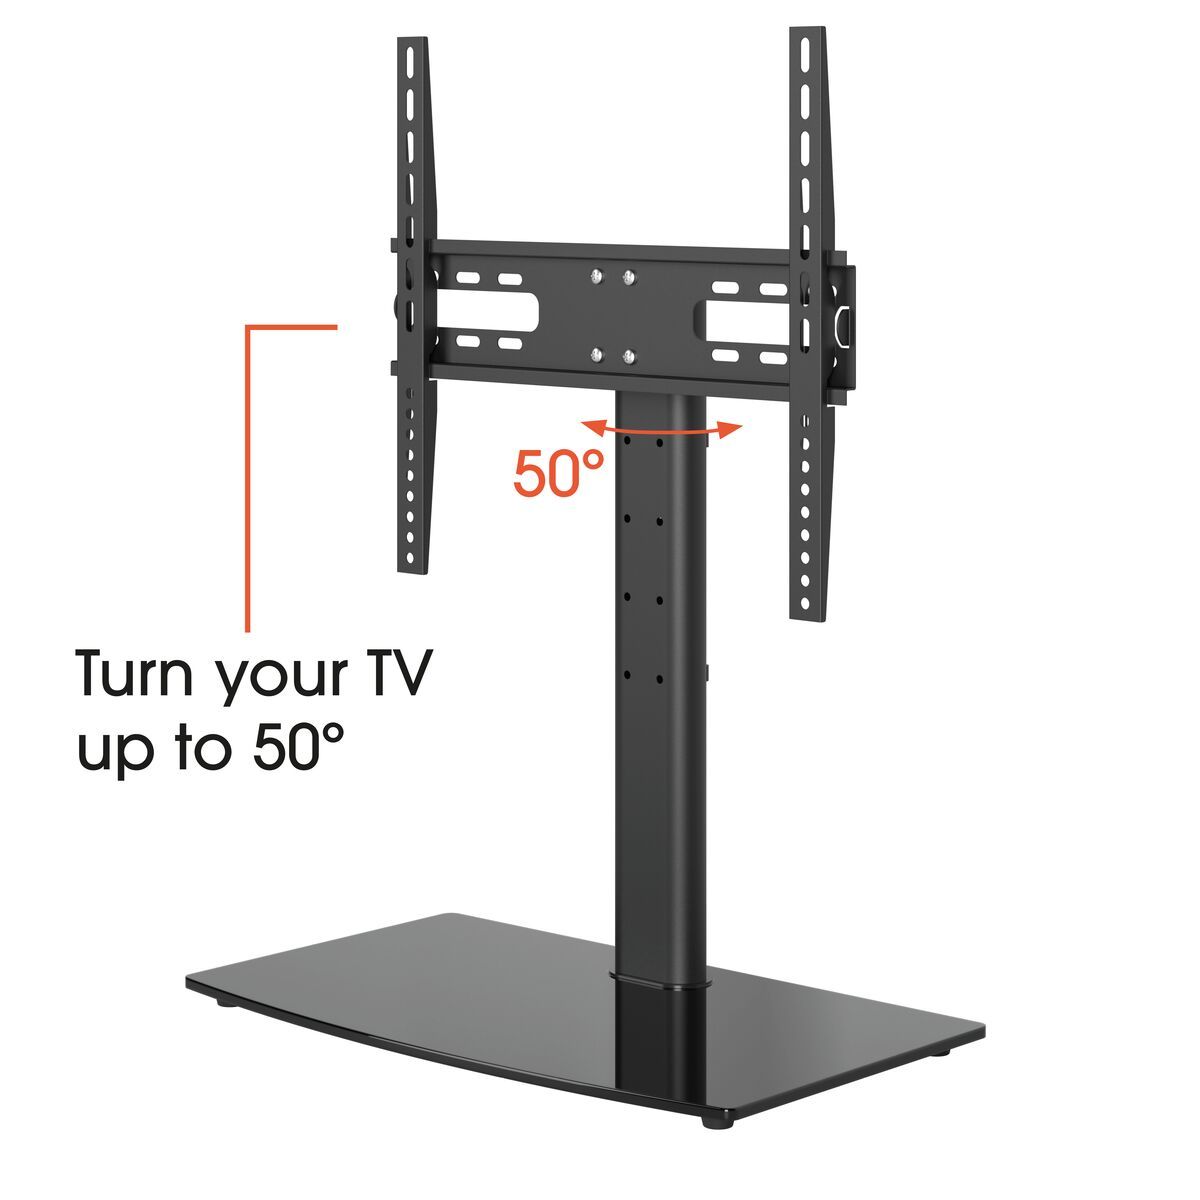 Vogel's MS3085 Supporto TV da tavolo - Adatto per televisori da 32 a 65 pollici - A 50° rotazione - USP